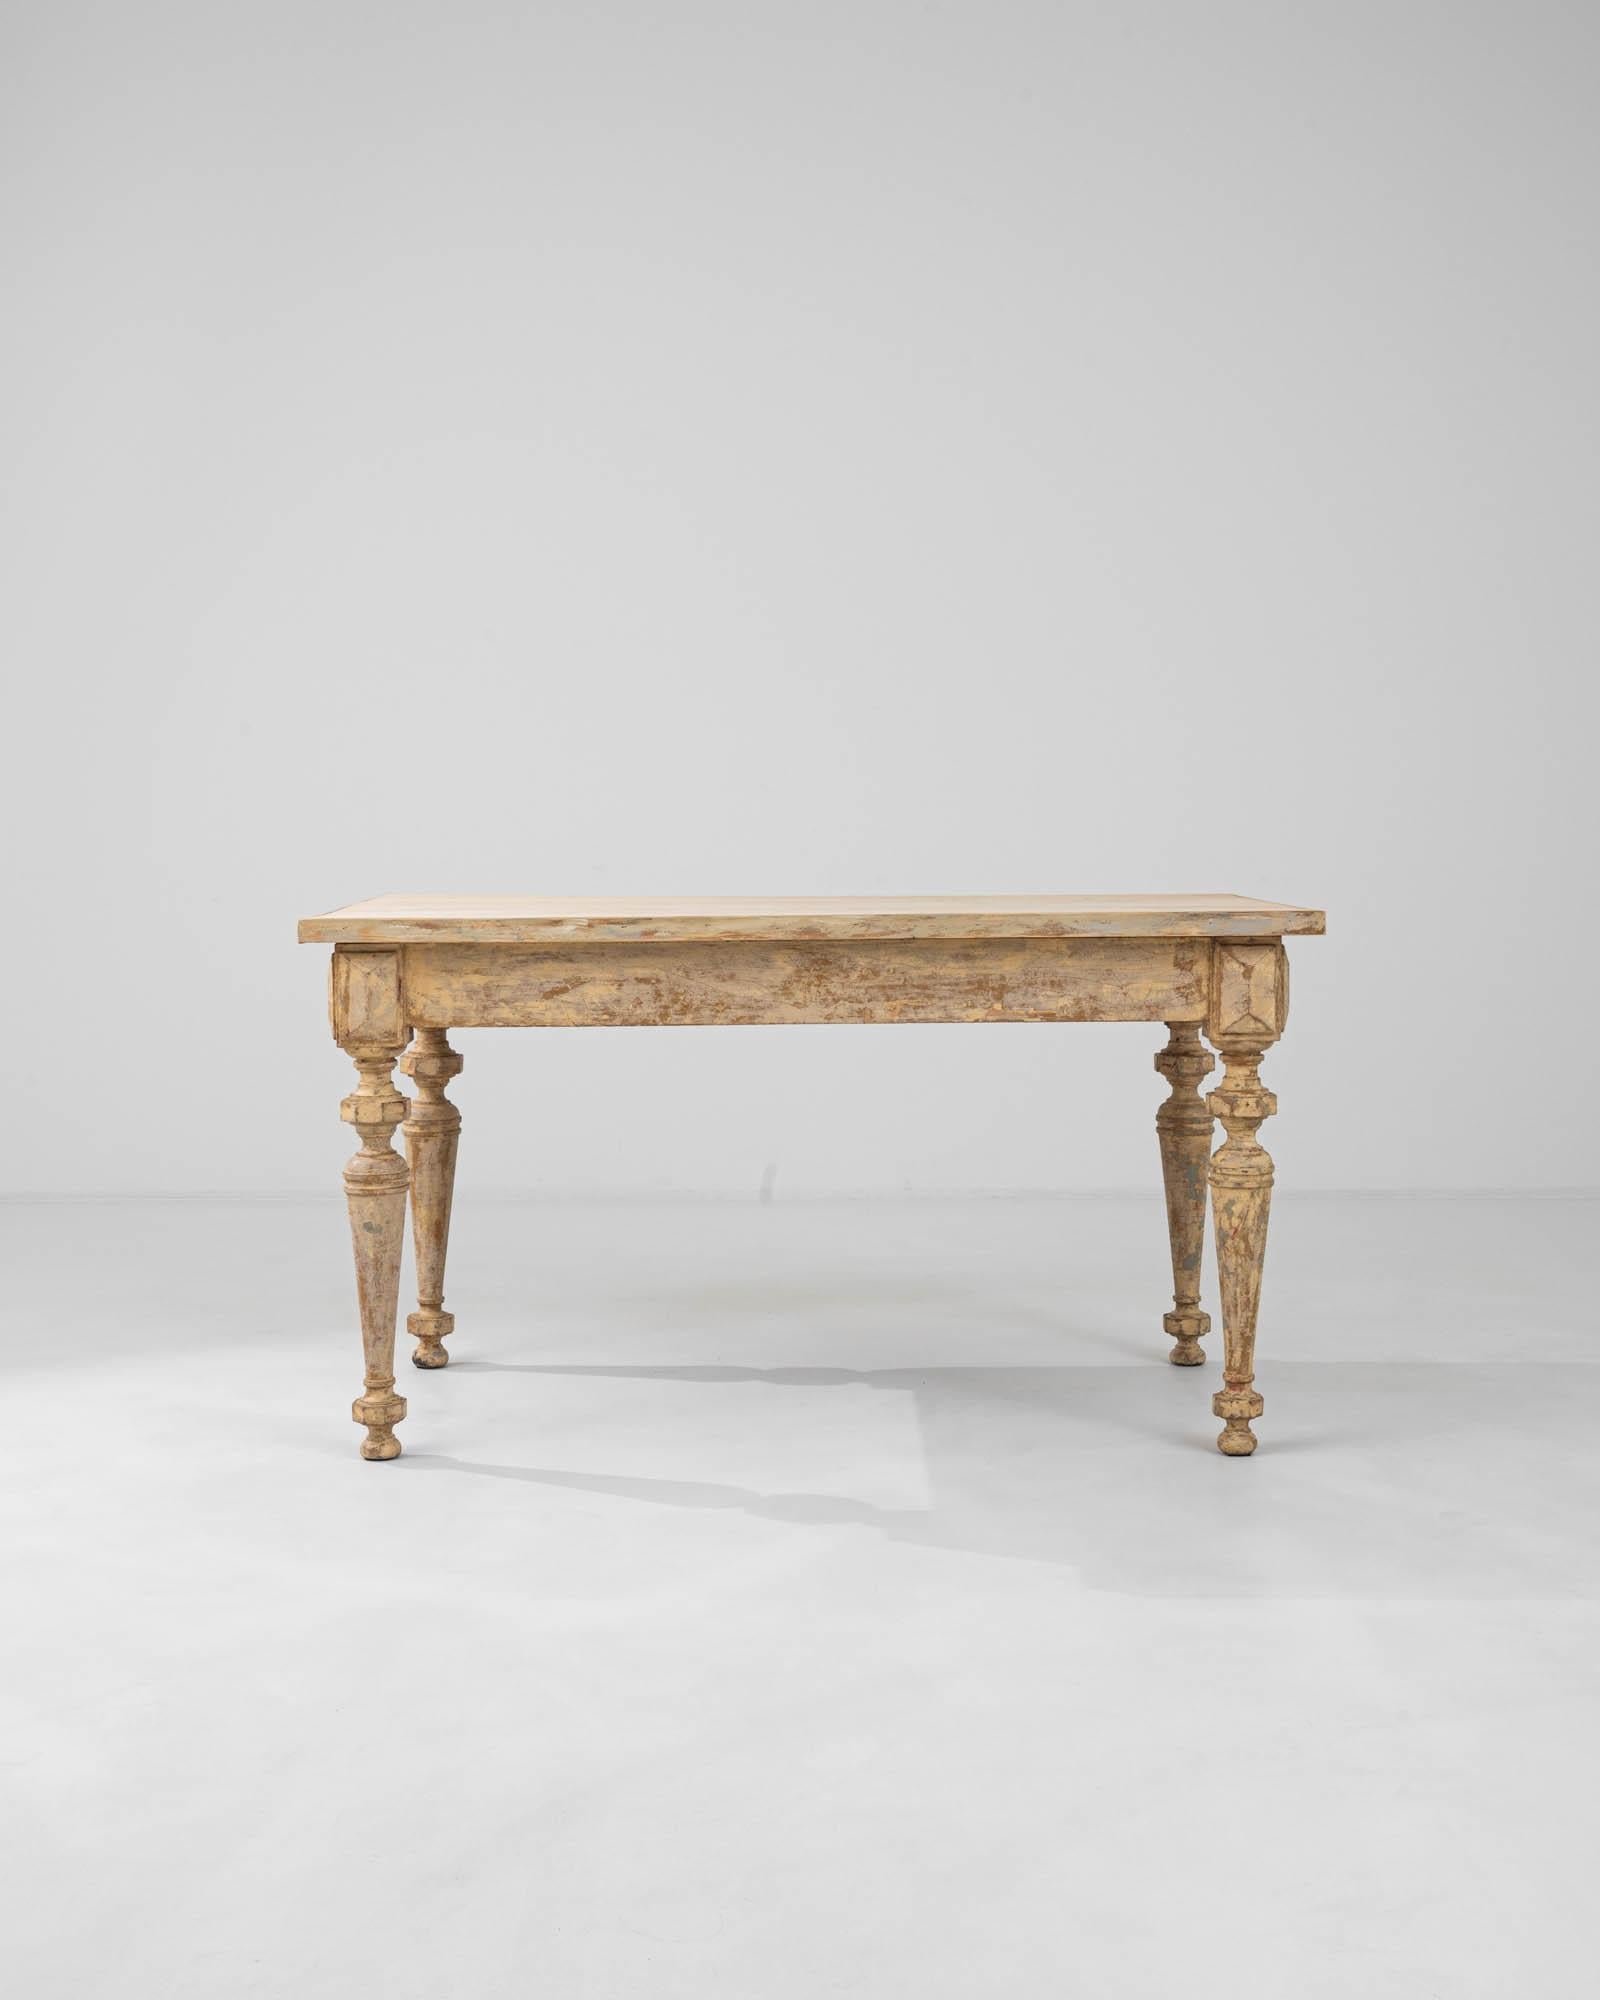 Cette table à manger française en bois du XIXe siècle est un remarquable témoignage de la beauté intemporelle des meubles anciens. Sa surface substantielle, ornée des douces marques du temps, repose sur des pieds élégamment sculptés dont la détresse